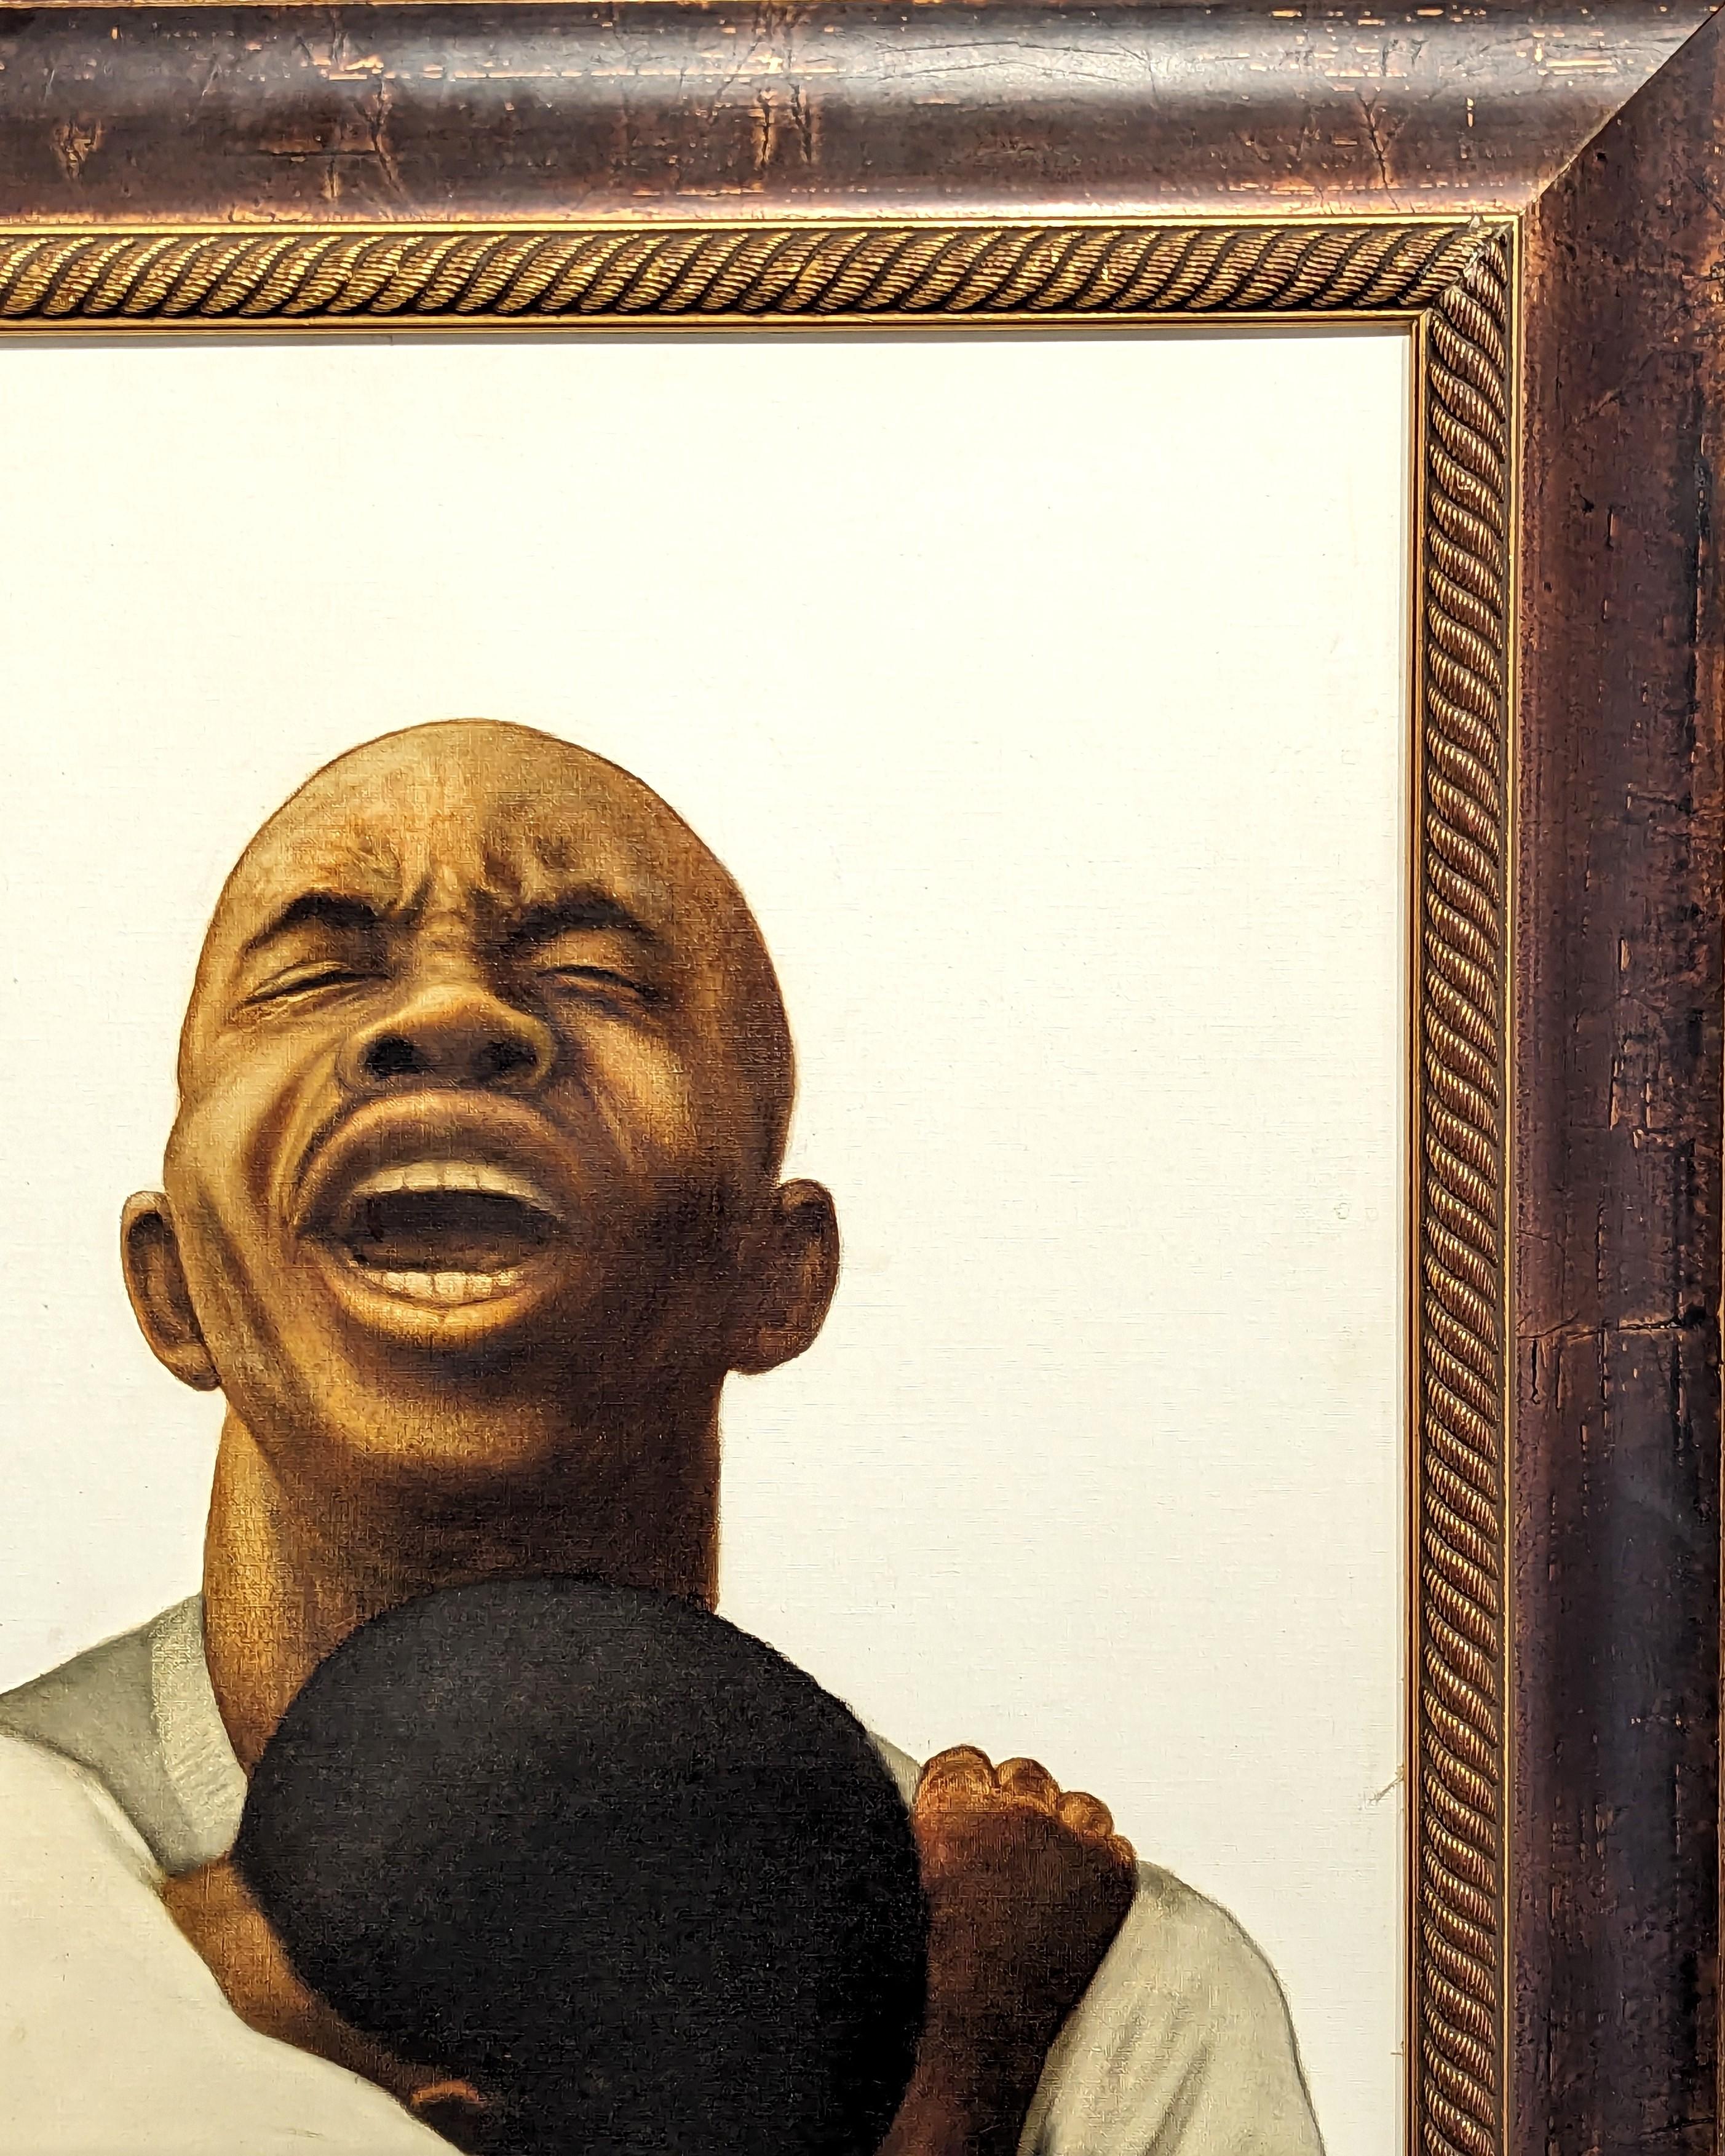 Portrait figuratif de jeunesse de l'artiste Buford Evans, basé à Houston. L'œuvre représente un homme noir regardant le ciel avec une expression angoissée sur le visage, tandis qu'un jeune enfant s'accroche à lui. Signé et daté par l'artiste dans le